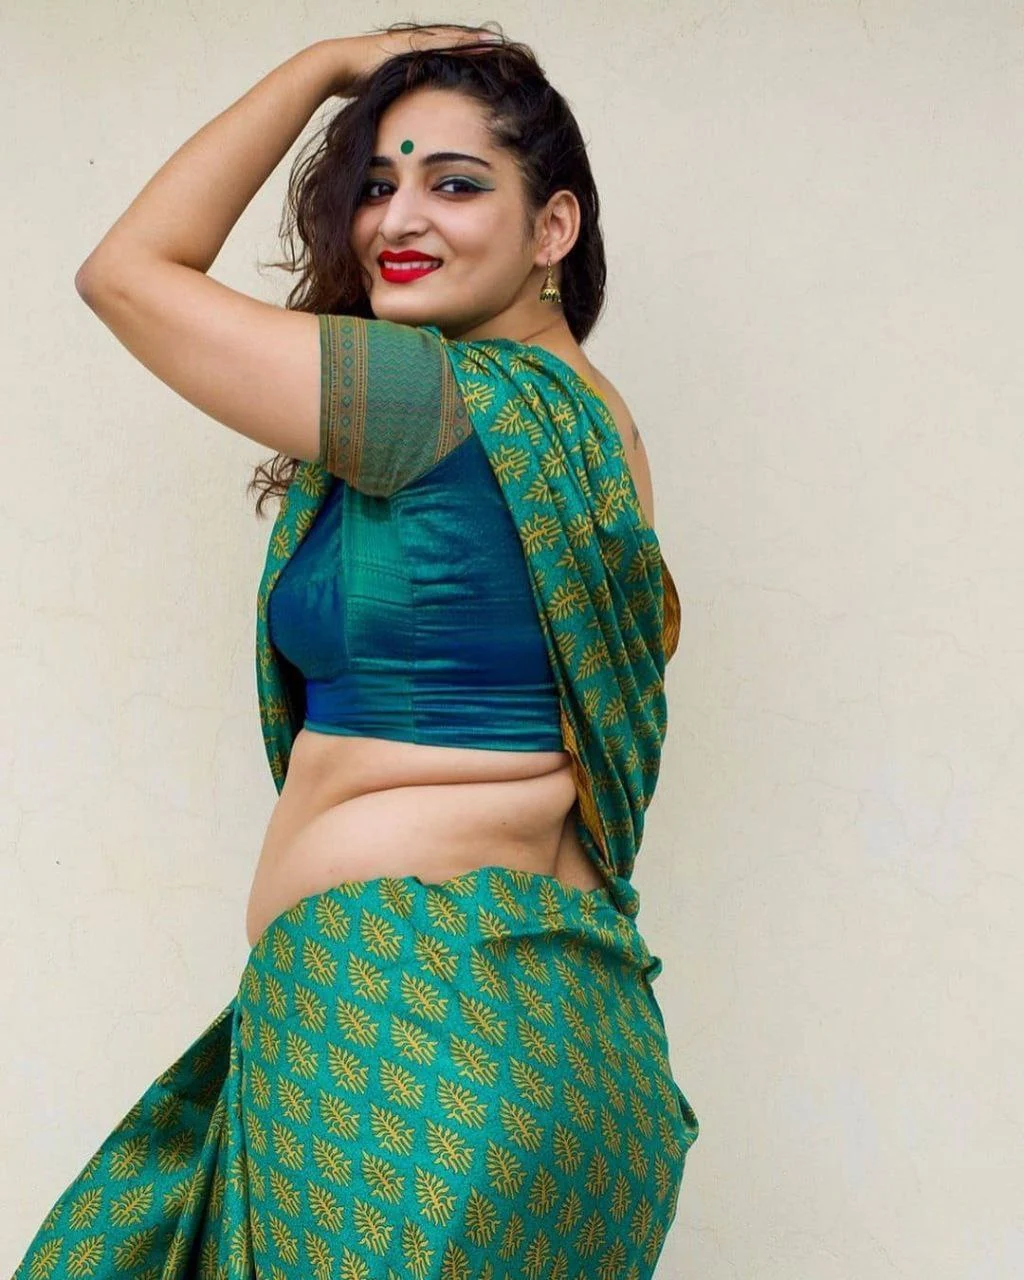 Malayalam Actress Hot Saree Images Beautiful Kerala Girl 